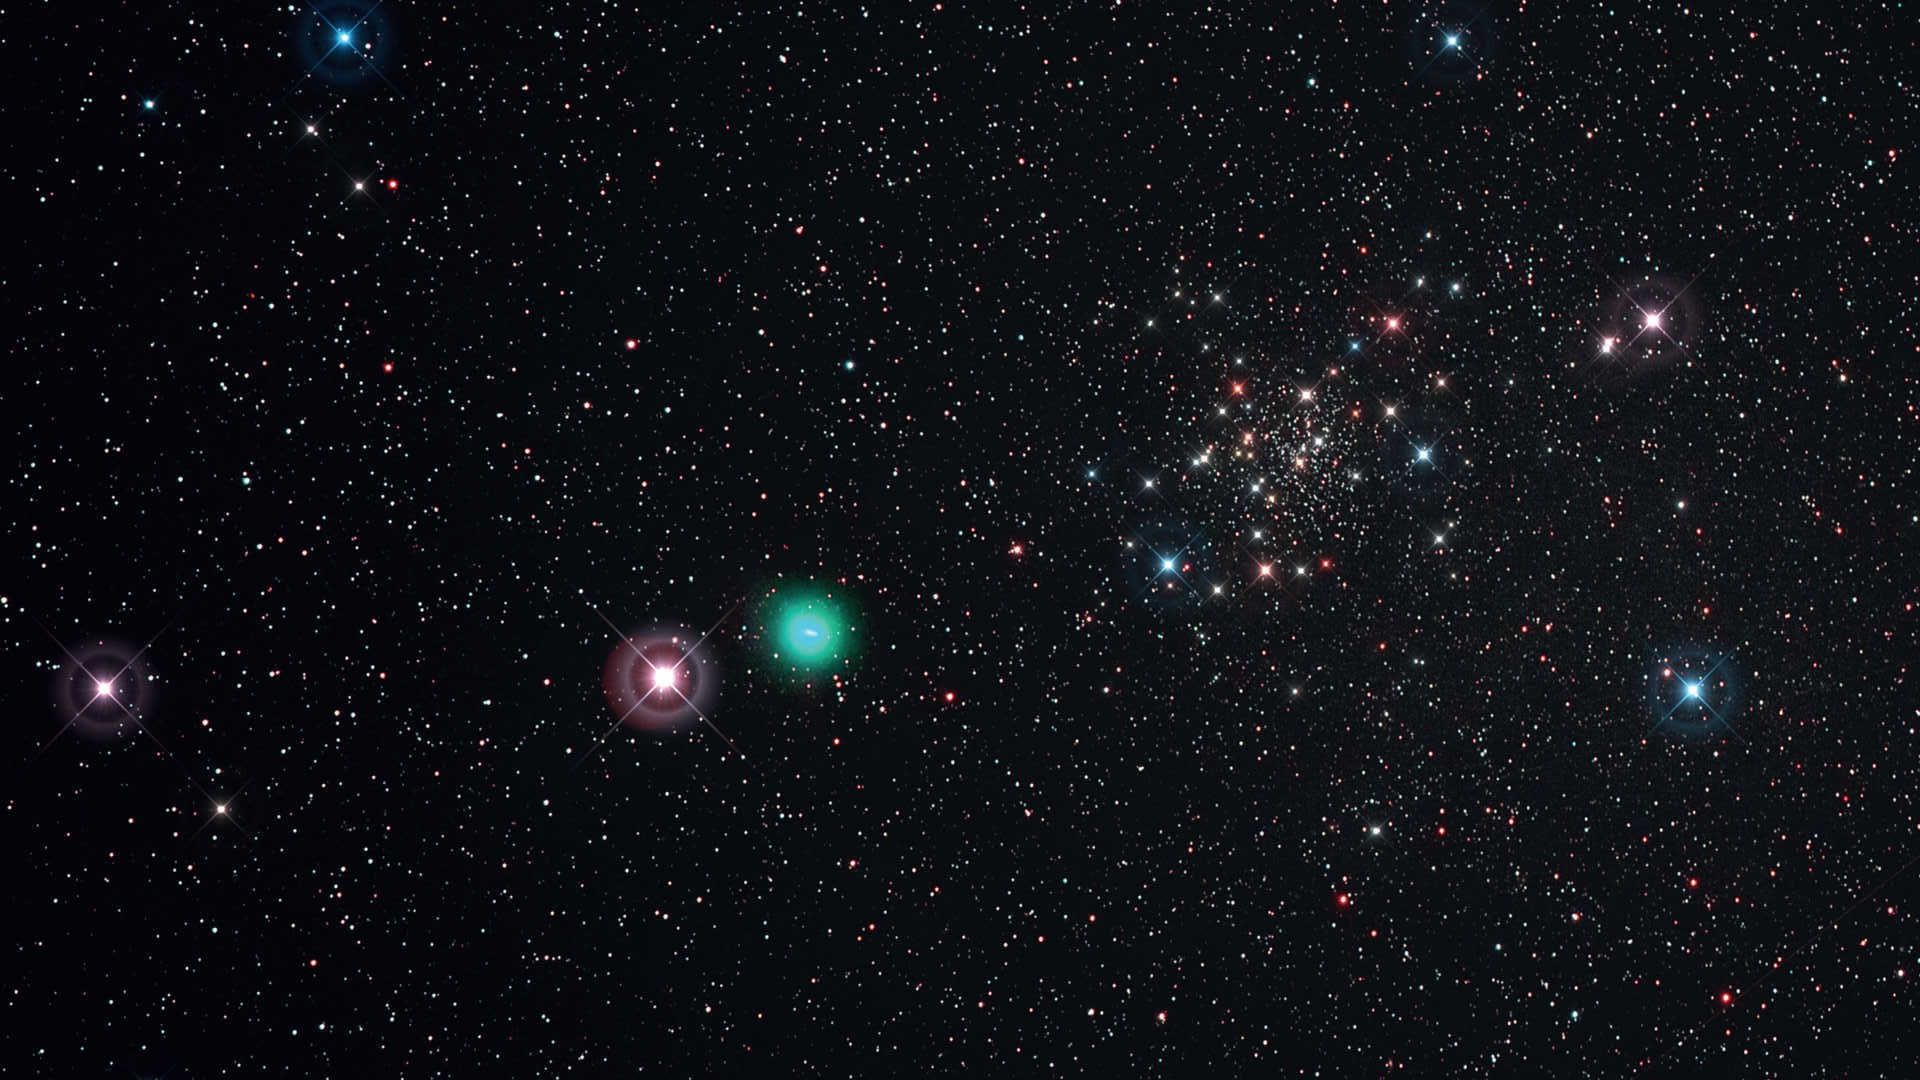 Noaptea senină din data de 21 mai 2015 a permis fotografierea cometei C/2014 Q2 (Lovejoy) în timp ce trecea pe lângă marginea roiului de stele NGC188. Pentru a obține această fotografie, s-a folosit un teleobiectiv/scope Kowa (distanța focală: 350 mm, F/4) pe un Canon 6D (modificat Hα) cu filtru UHC-S. Imagine compusă din șase fotografii, cu un timp de expunere de 450 de secunde fiecare (ISO 800; timp total de expunere: 45 de minute). Procesată cu DeepSkyStacker și Photoshop; vârfurile au fost adăugate doar din motive estetice. U. Dittler